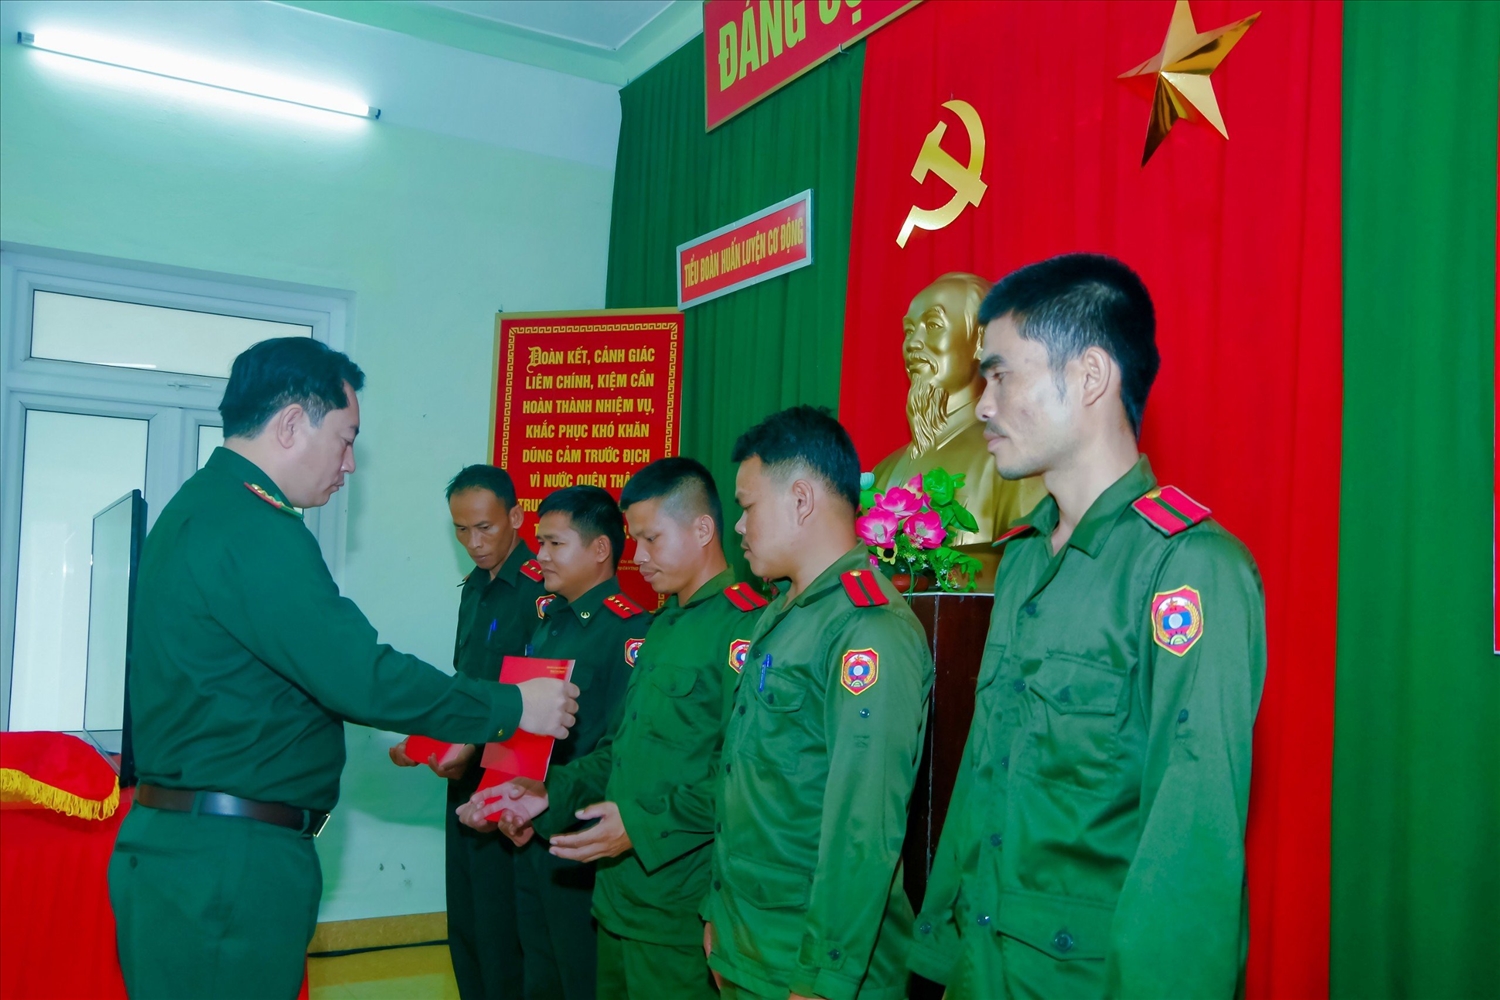 Thượng tá Hoàng Minh Hùng, Phó Chỉ huy trưởng - Tham mưu trưởng BĐBP tỉnh trao chứng chỉ hoàn thành khóa tập huấn cho các học viên.